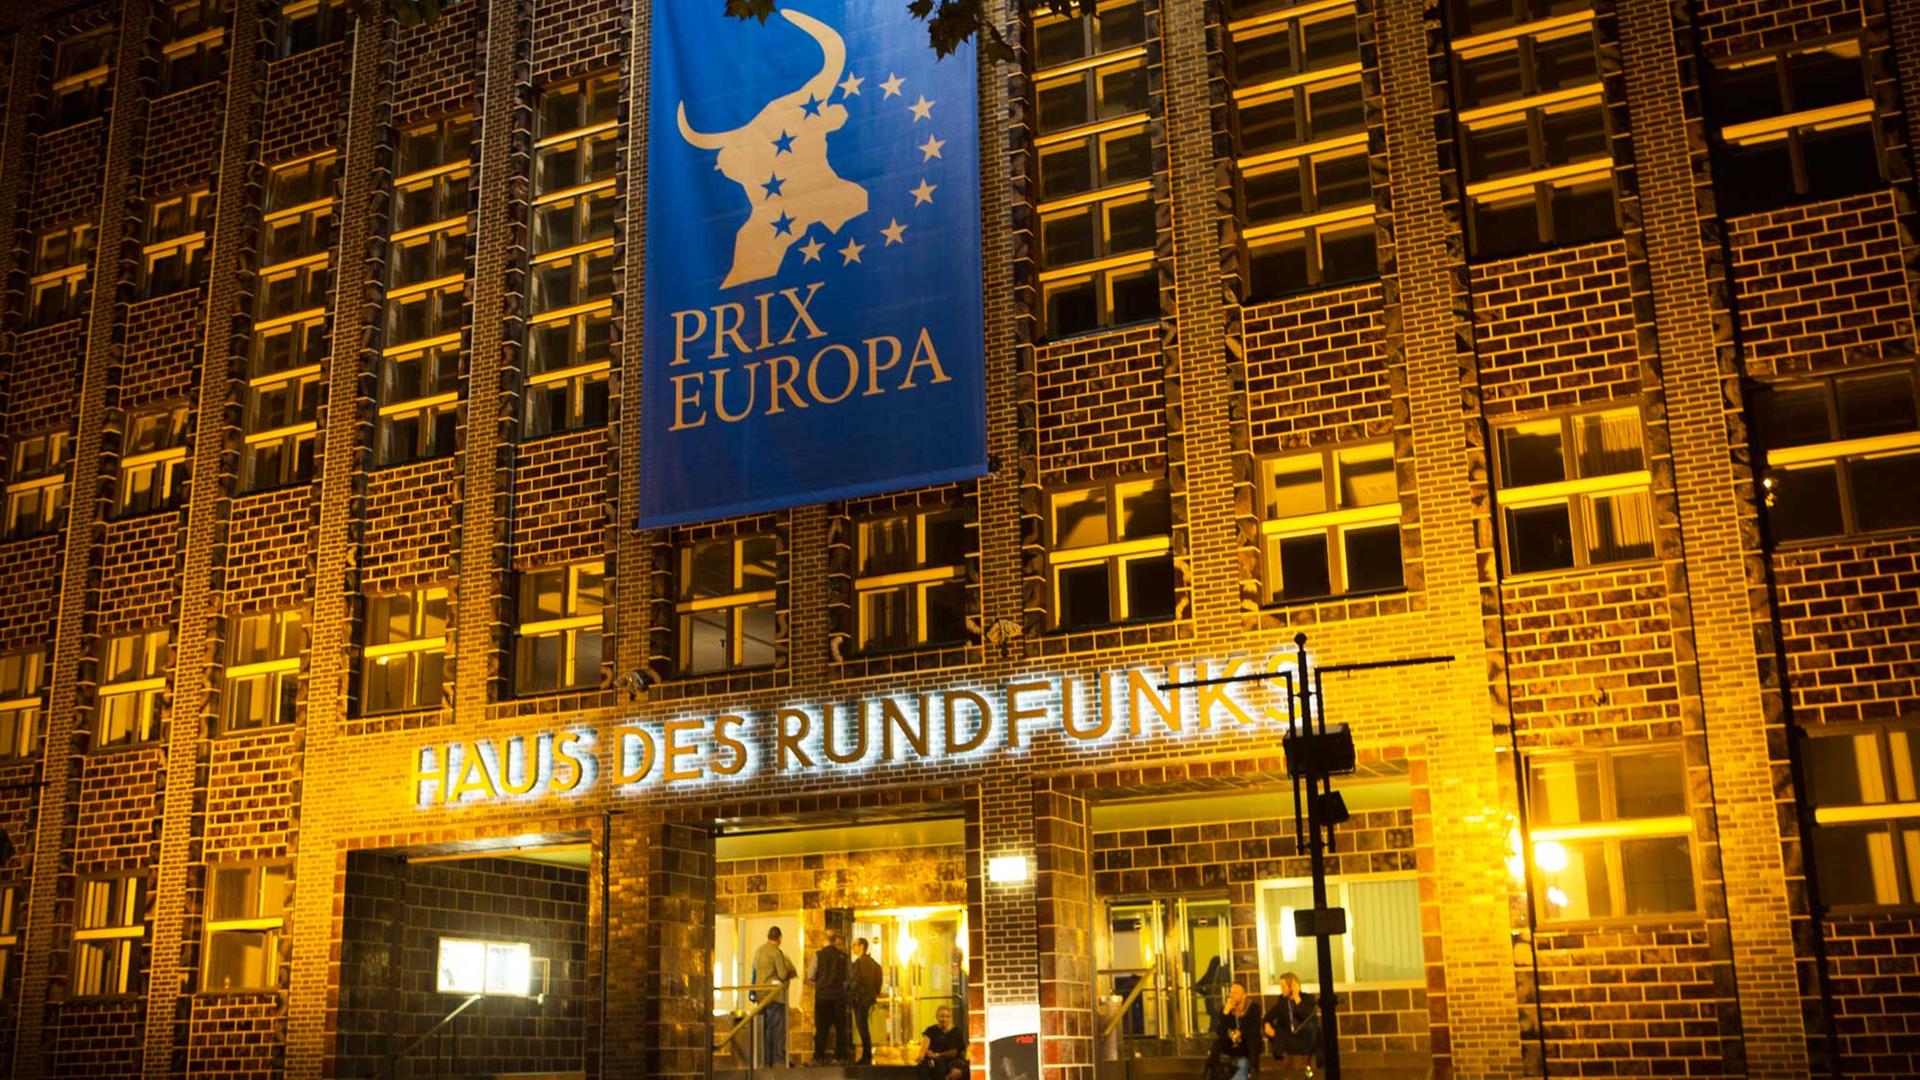 Im Haus des Rundfunks in Berlin findet alljährlich der Prix Europa statt. Dort ist auch der Sitz des RBB.